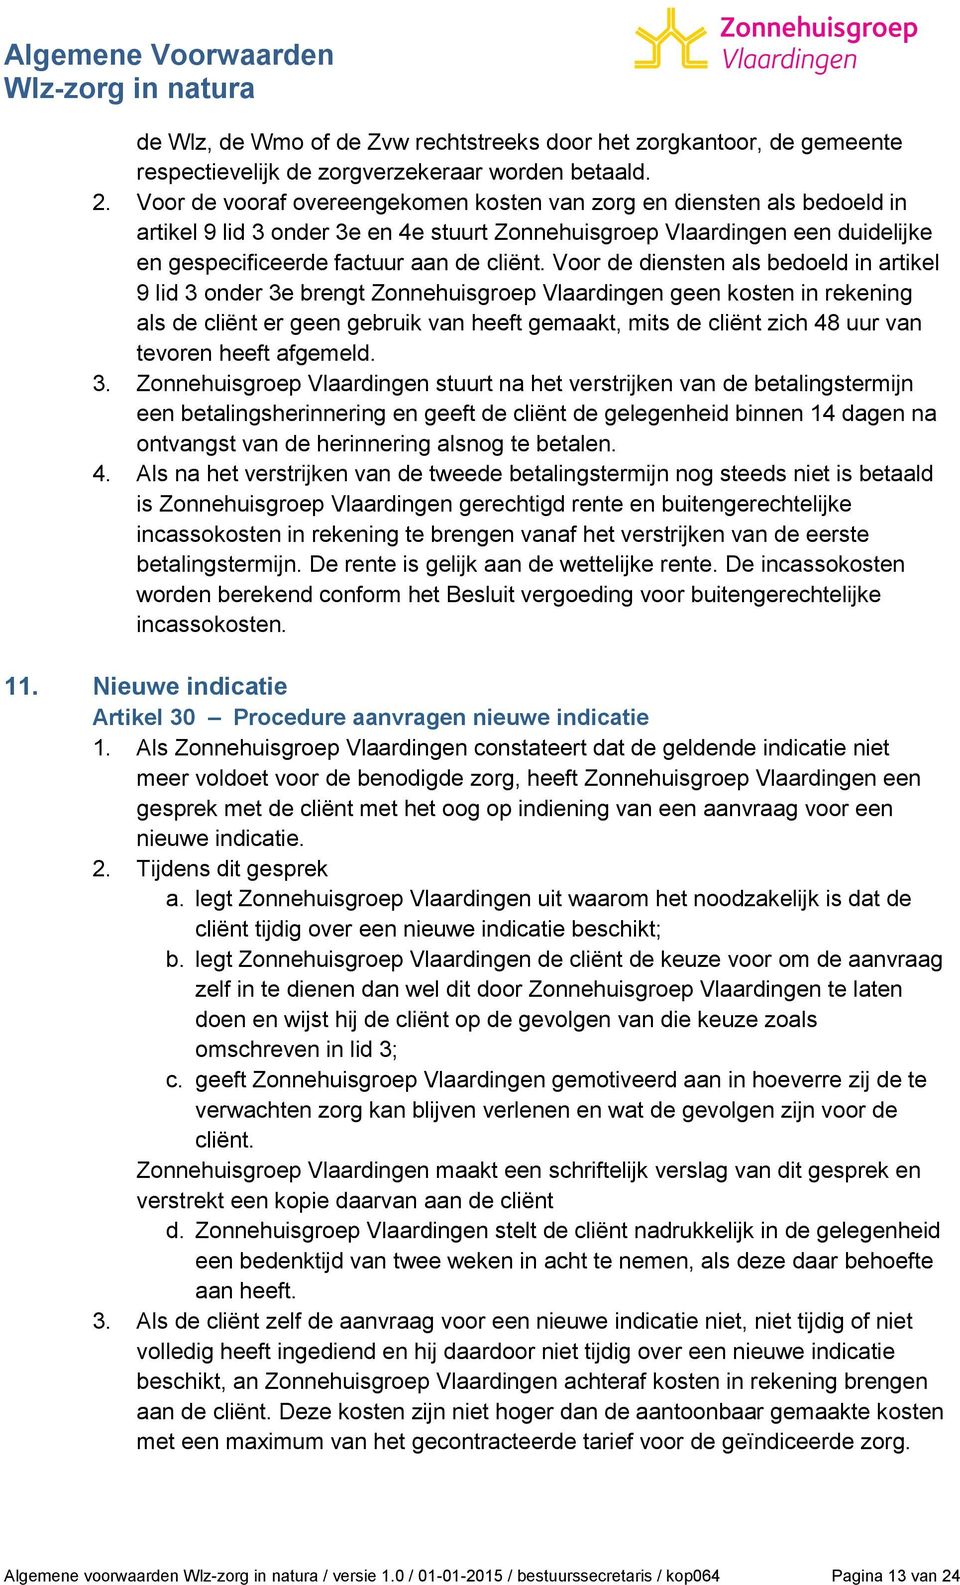 Voor de diensten als bedoeld in artikel 9 lid 3 onder 3e brengt Zonnehuisgroep Vlaardingen geen kosten in rekening als de cliënt er geen gebruik van heeft gemaakt, mits de cliënt zich 48 uur van